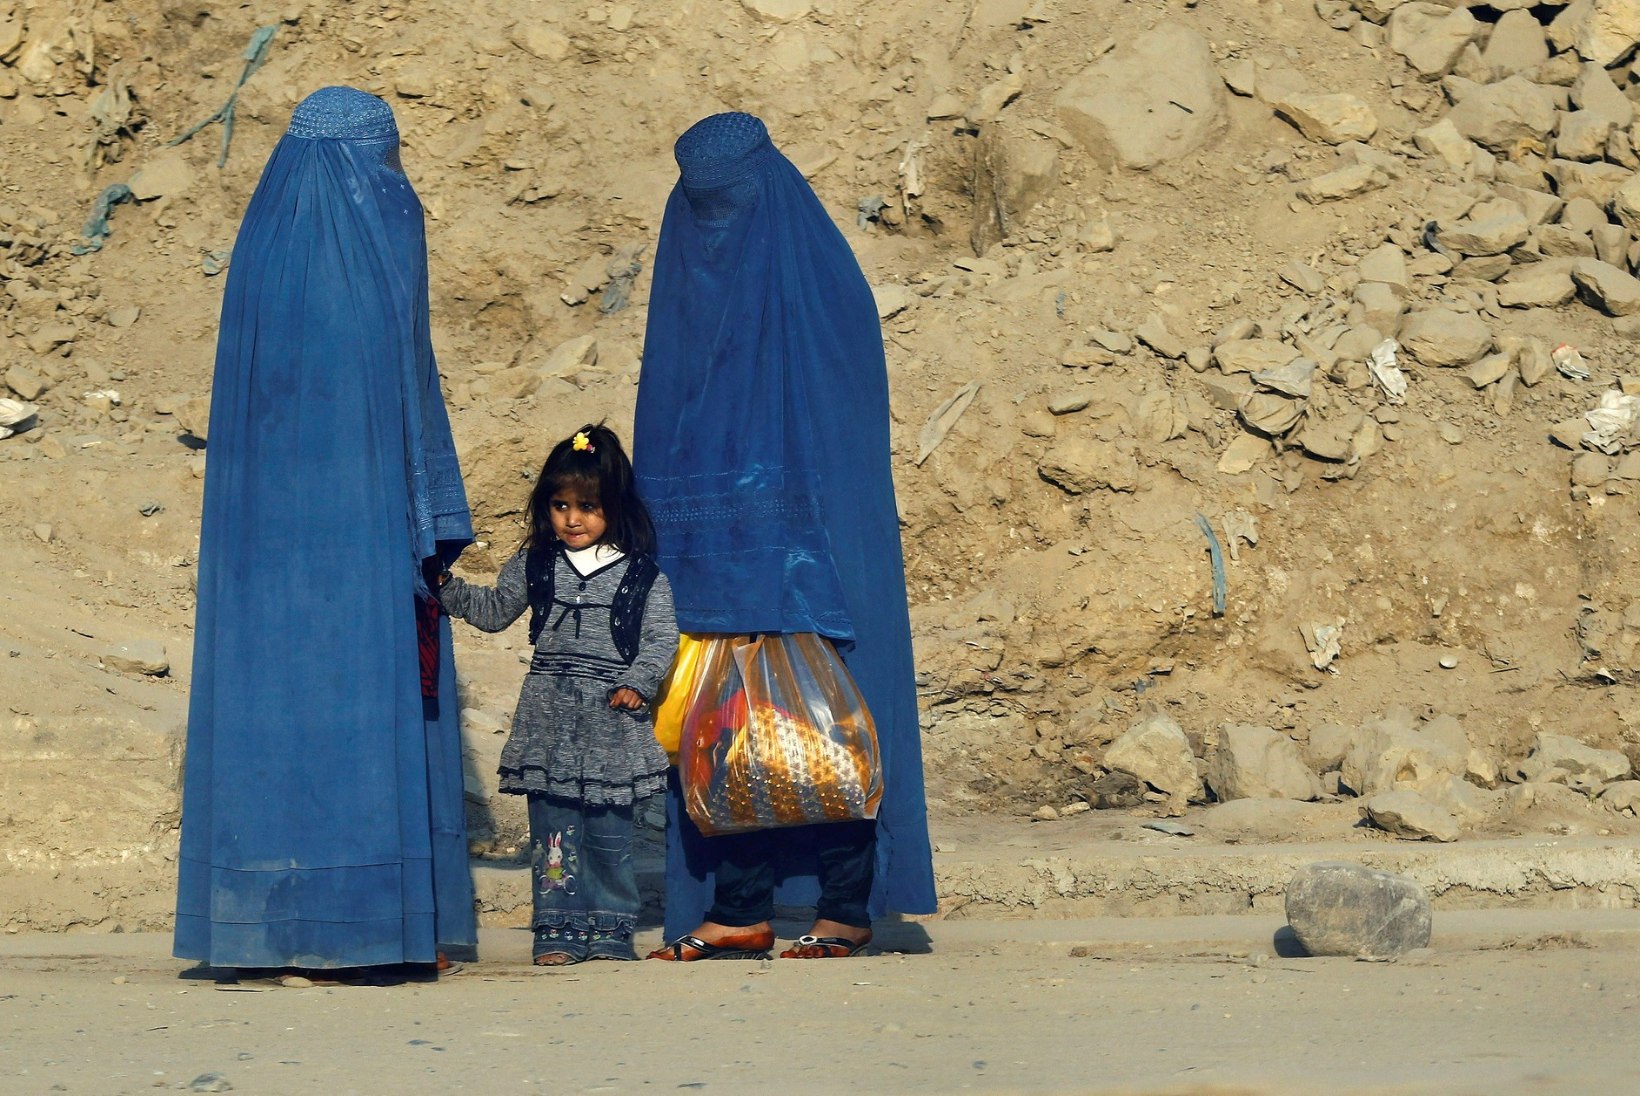 LAPSED MÜÜGIKS, NAISED TUPPA! Taliban tüürib Afganistani häda ja viletsuse poole